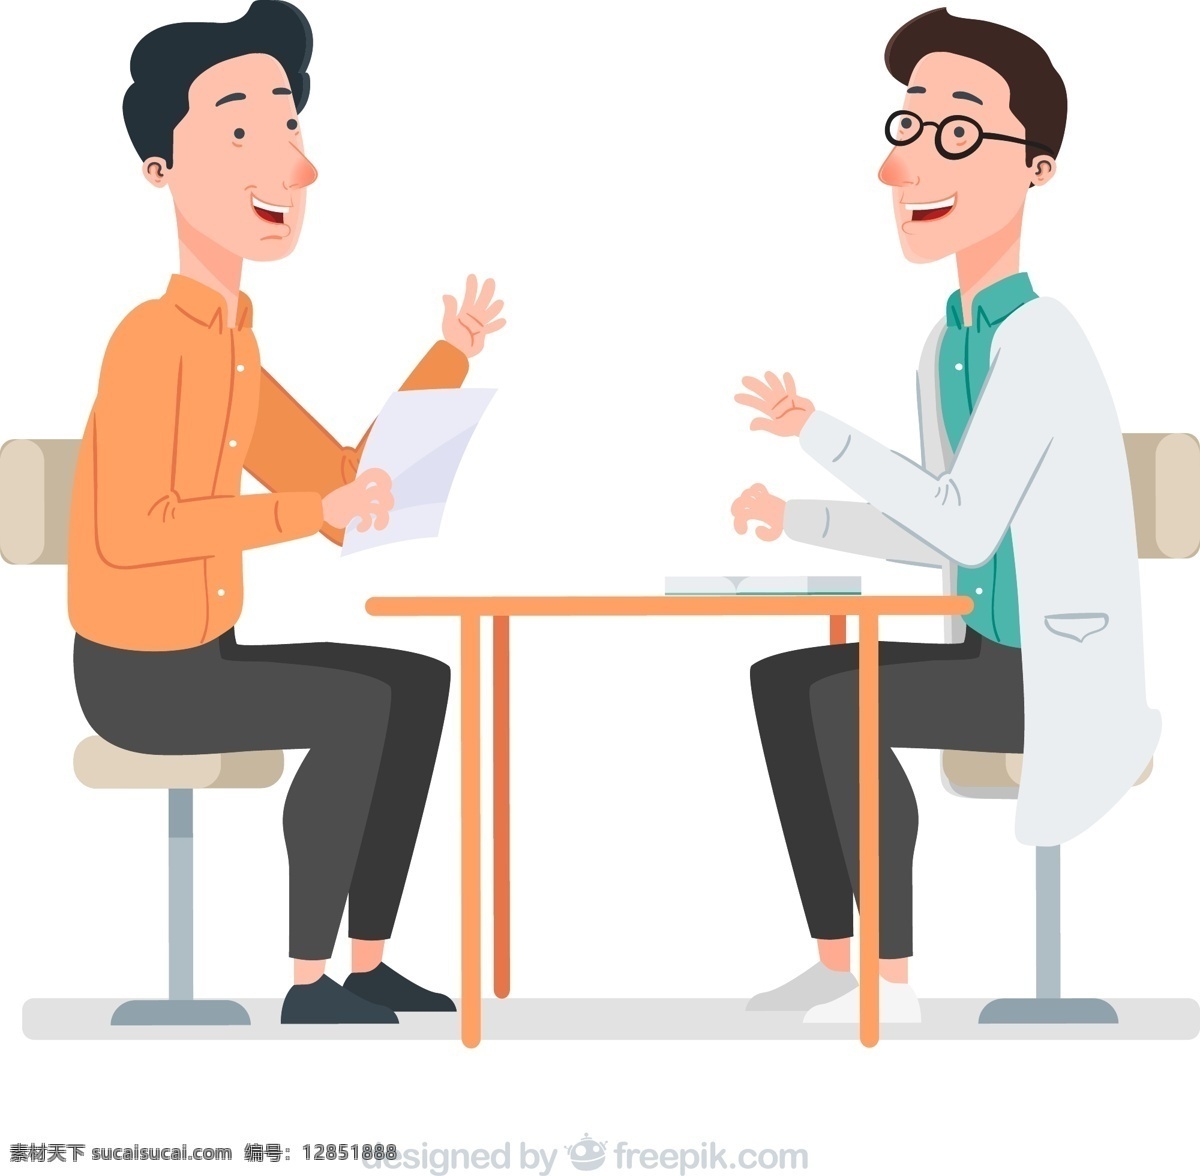 创意 谈话 中 医生 患者 医疗 桌子 椅子 医院 男子 动漫动画 动漫人物